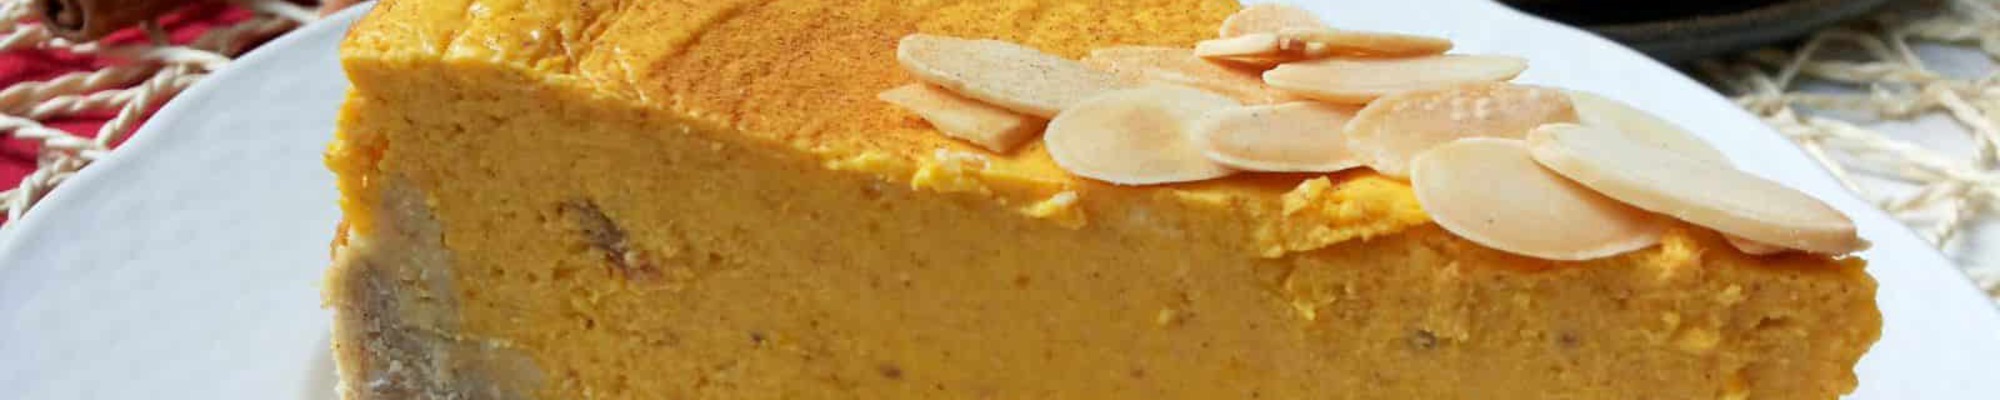 Voňavý tekvicový cheesecake so slušným množstvom bielkovín (Recept)